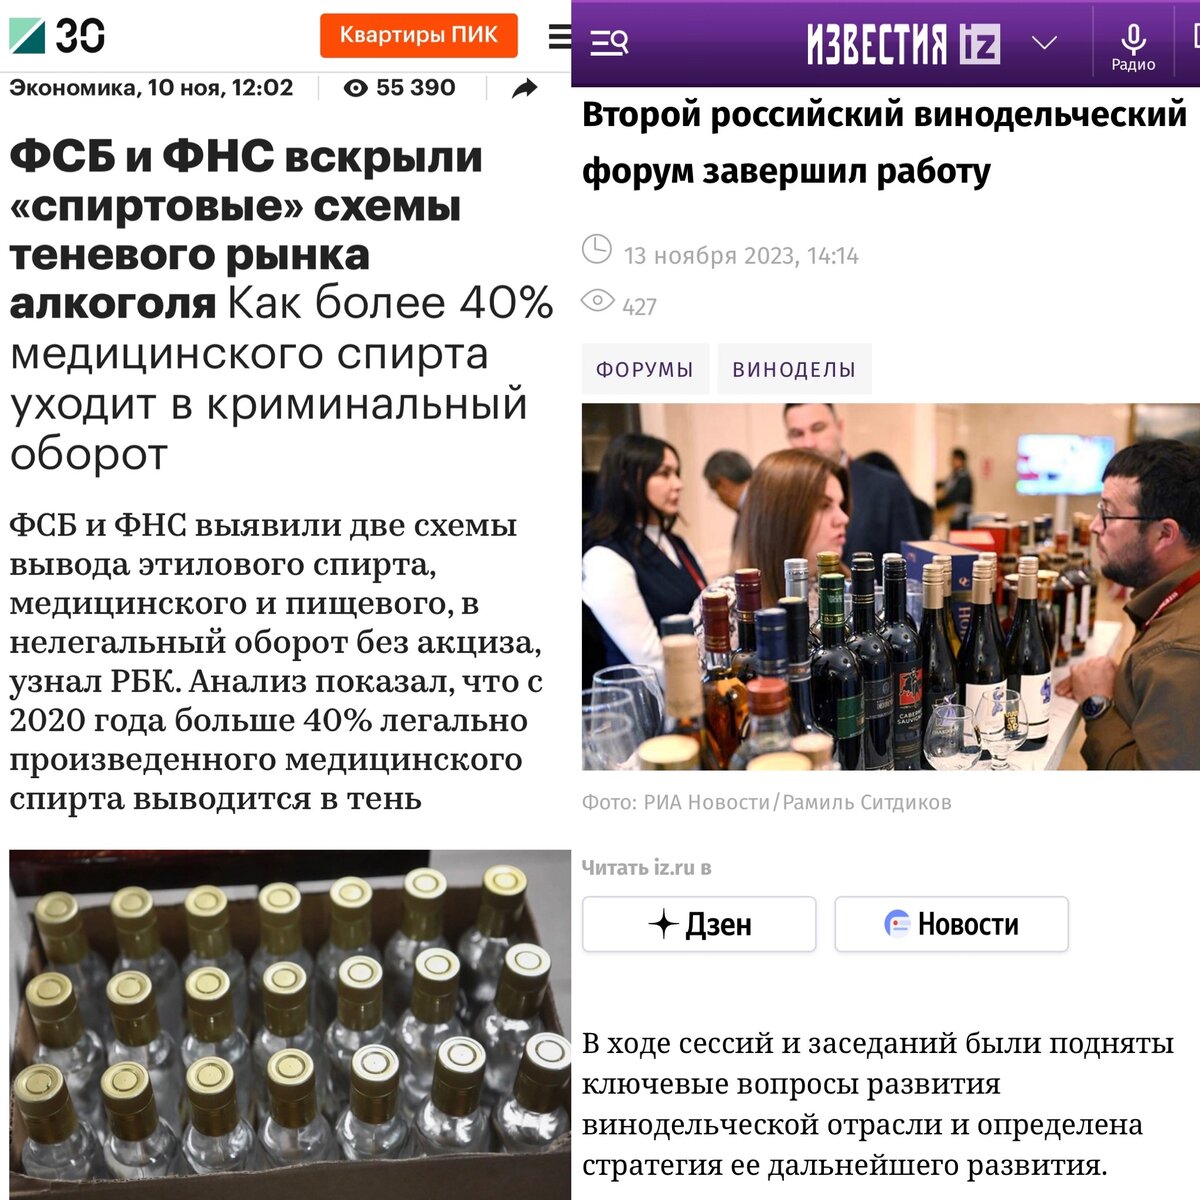 Ежедневная новостная повестка о том, как продвинуть российские вина уже занимает видимую часть ежедневной новостной ленты.